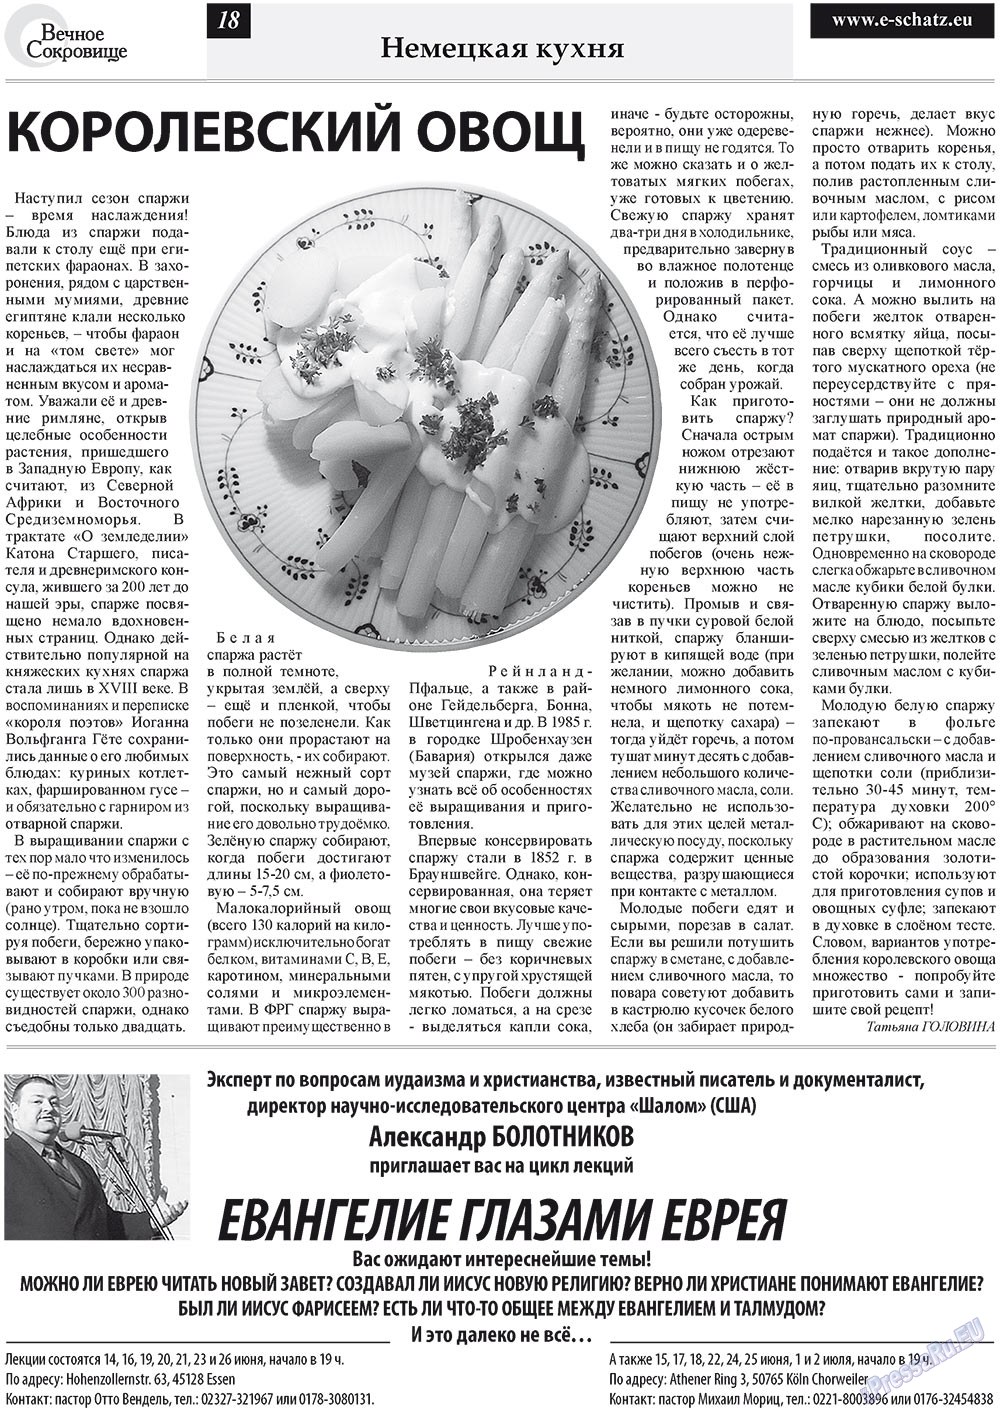 Вечное сокровище (газета). 2011 год, номер 3, стр. 18